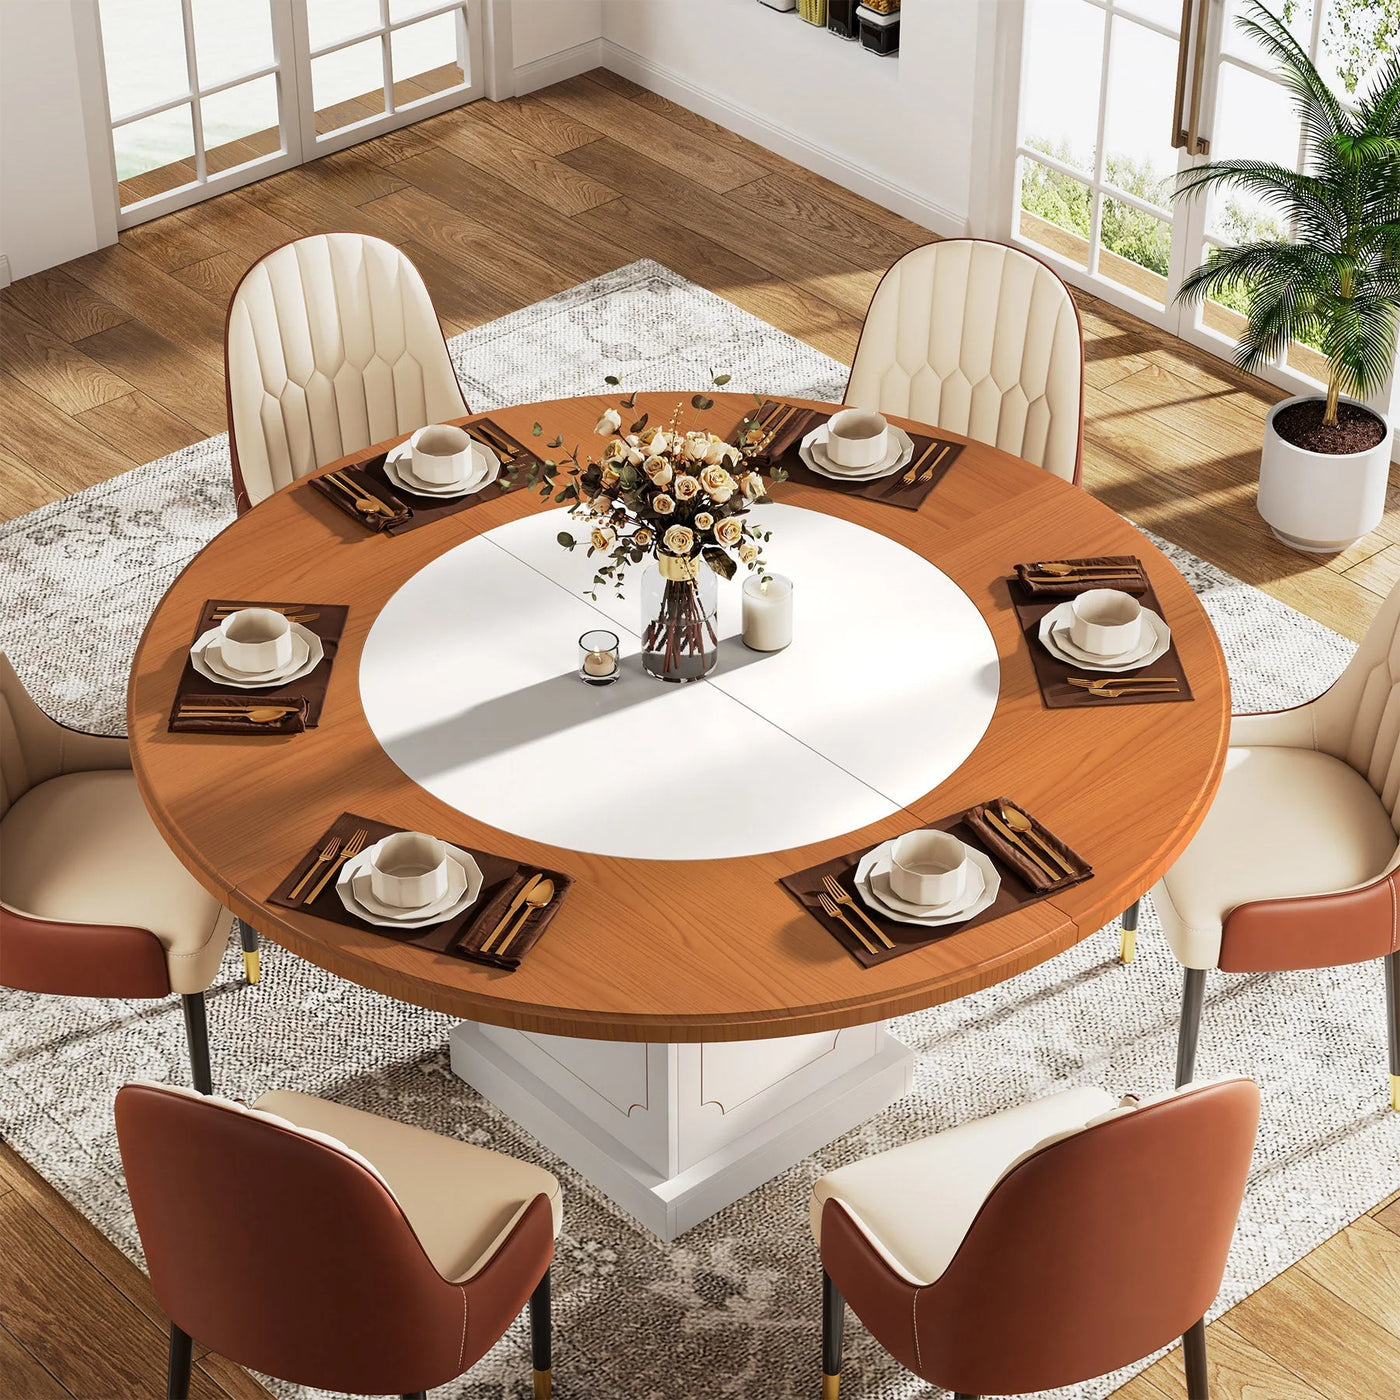 طاولة طعام مستديرة من فينتر، طاولة مطبخ دائرية خشبية مقاس 47 بوصة تتسع لـ 4-6 أشخاص